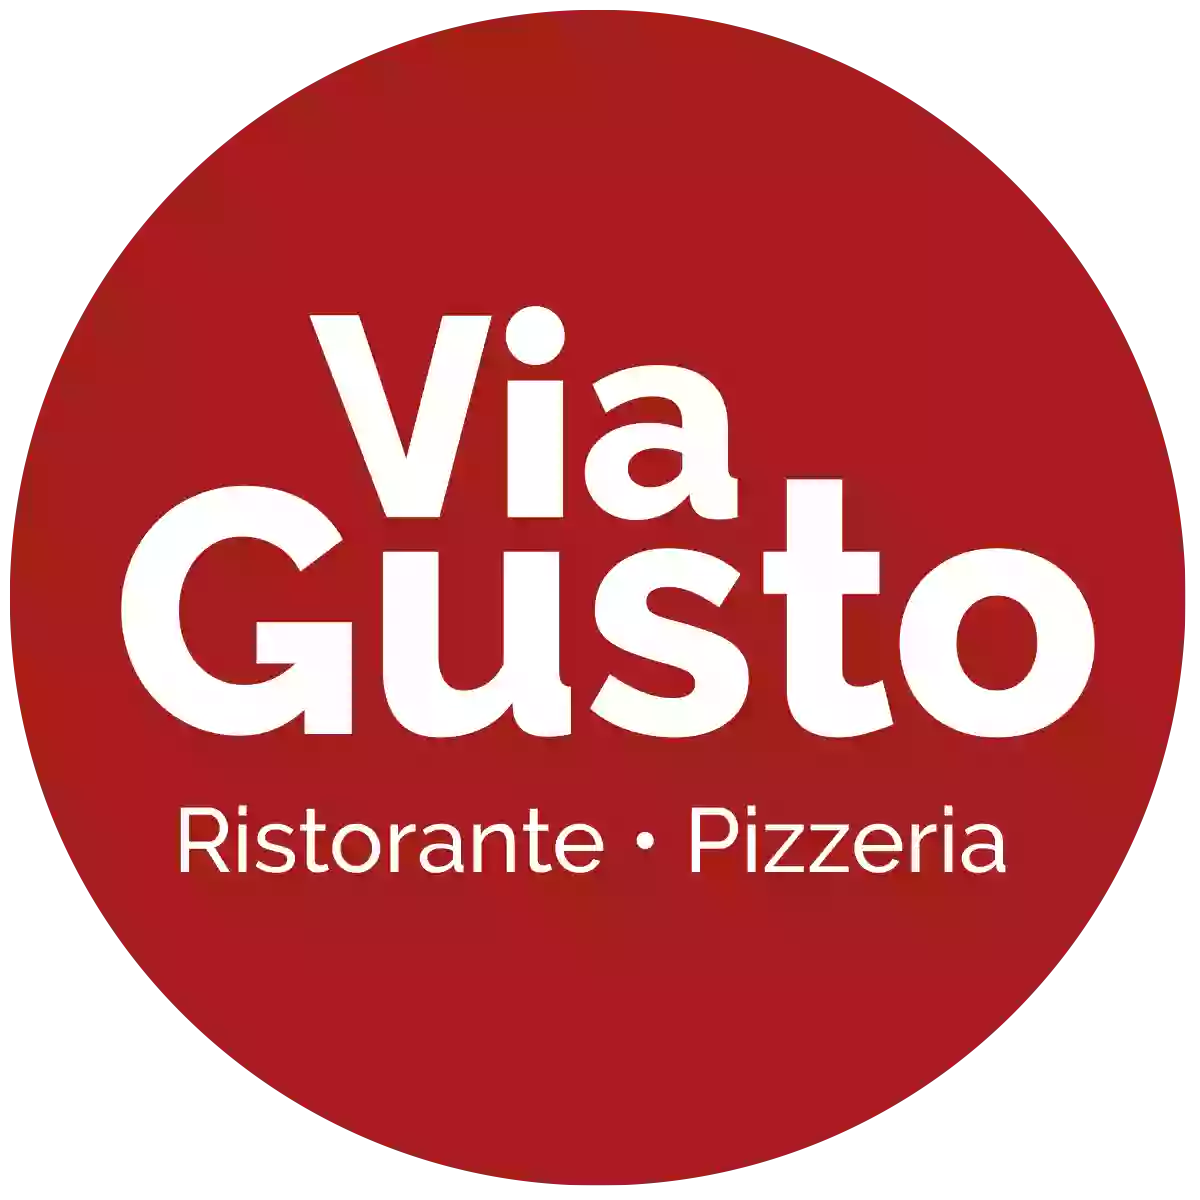 Via Gusto Ristorante & Pizzeria